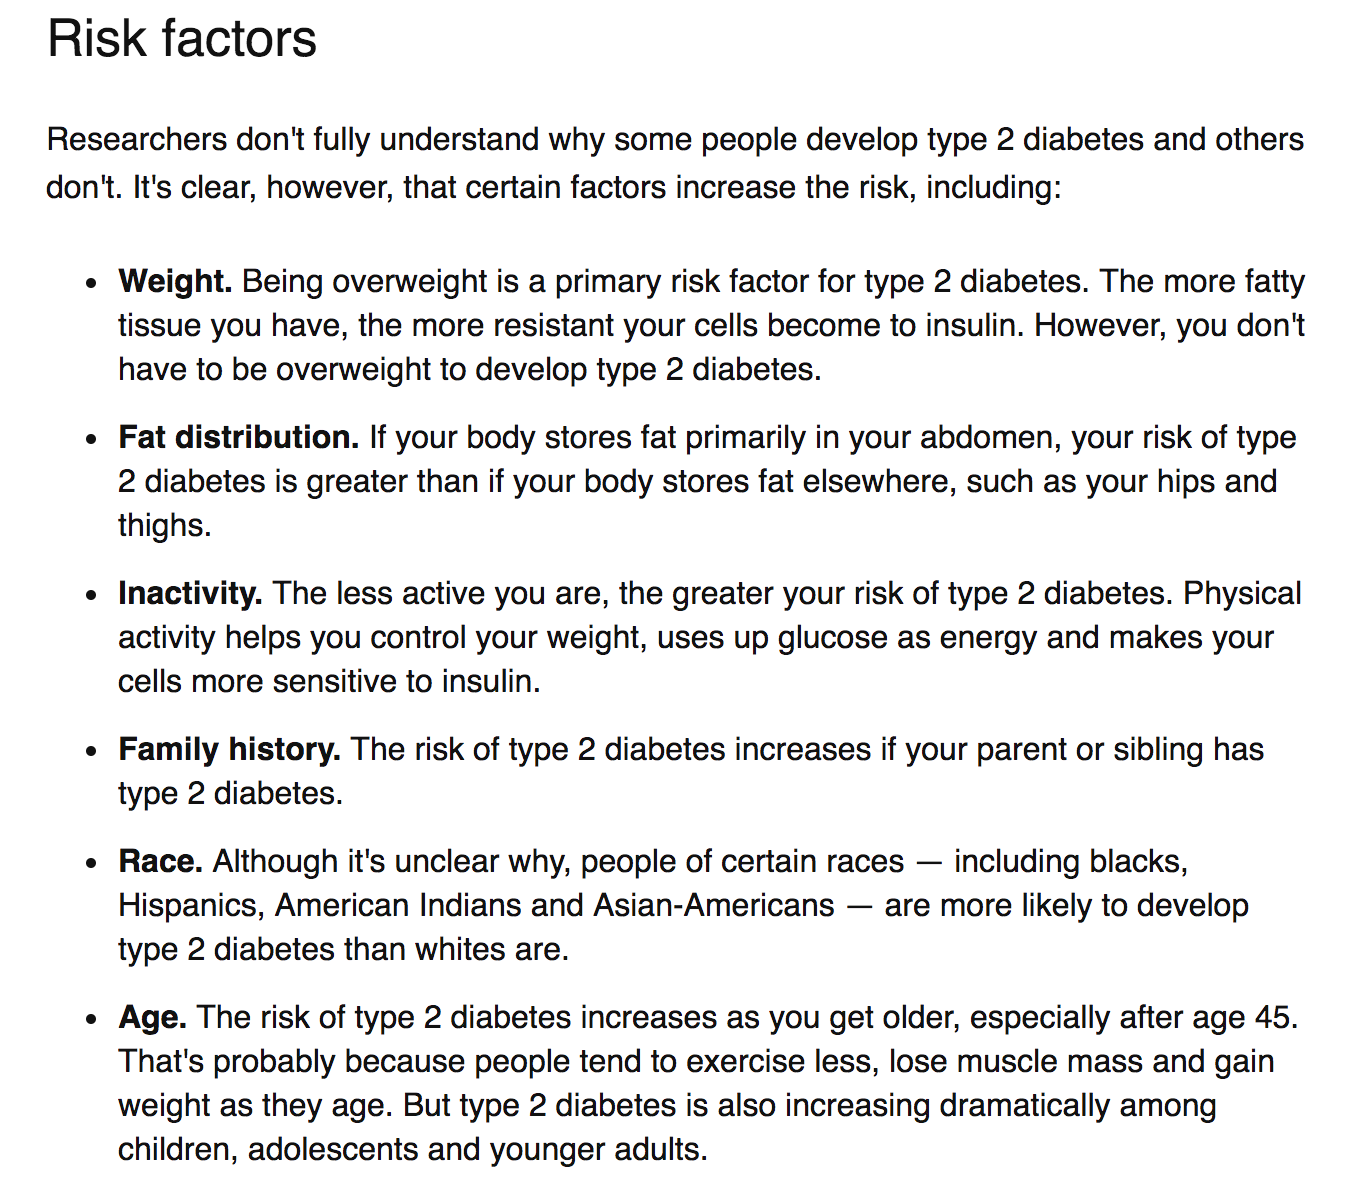 diabetes risk